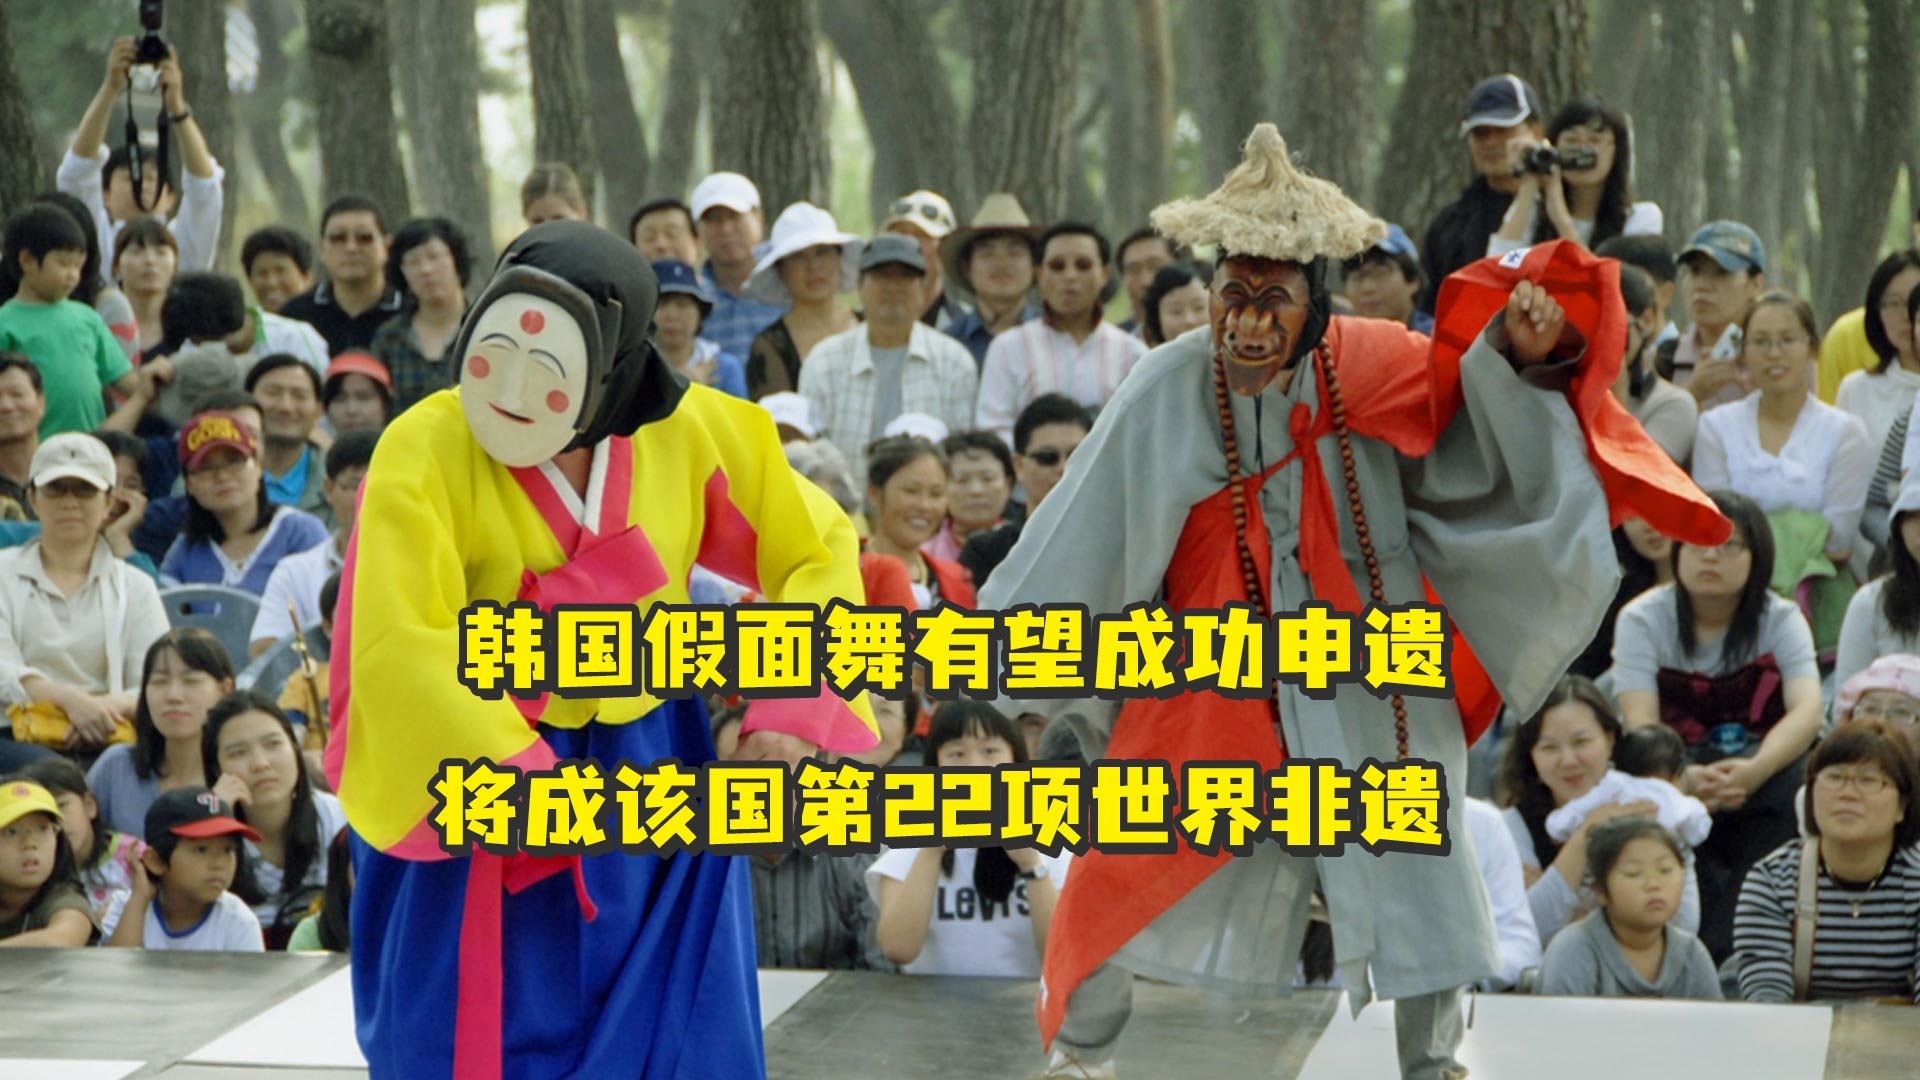 韩国假面舞有望成功申遗，将成该国第22项世界非遗